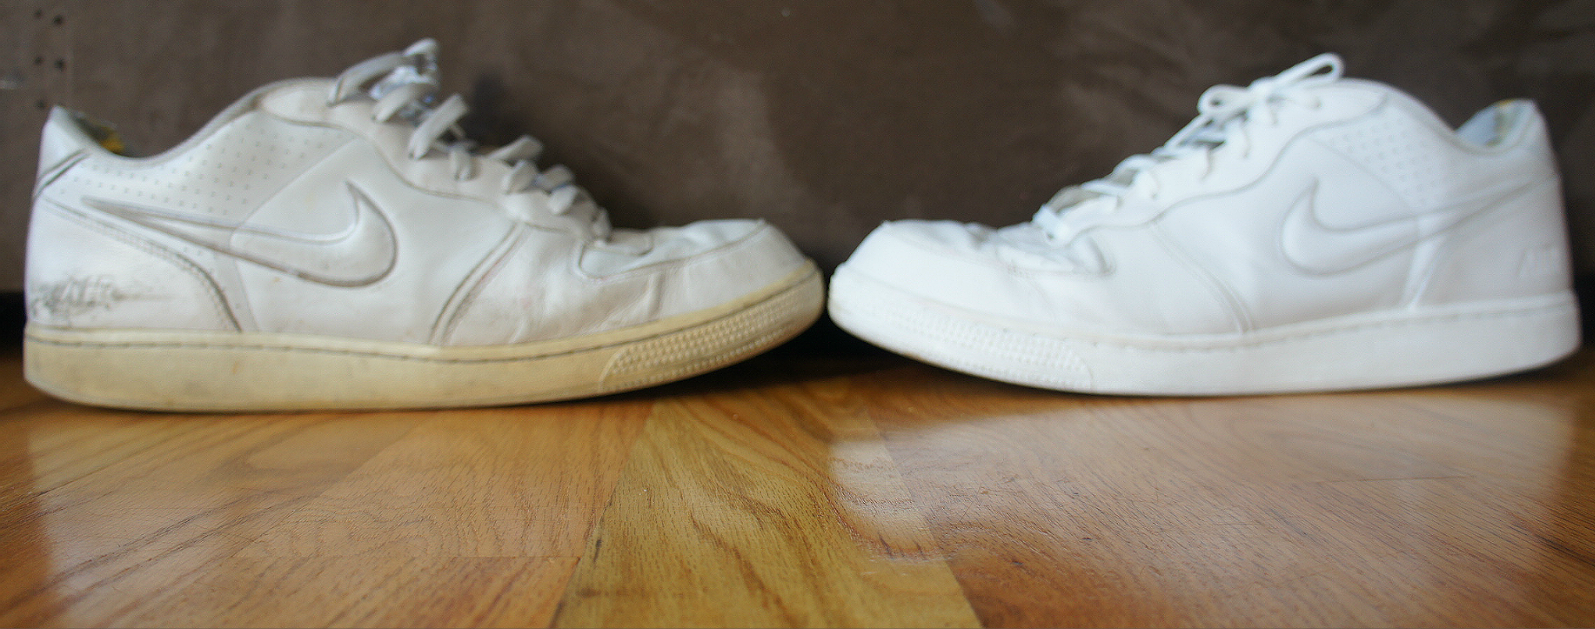 طرق تنظيف الحذاء الأبيض وإزالة الإصفرار 2